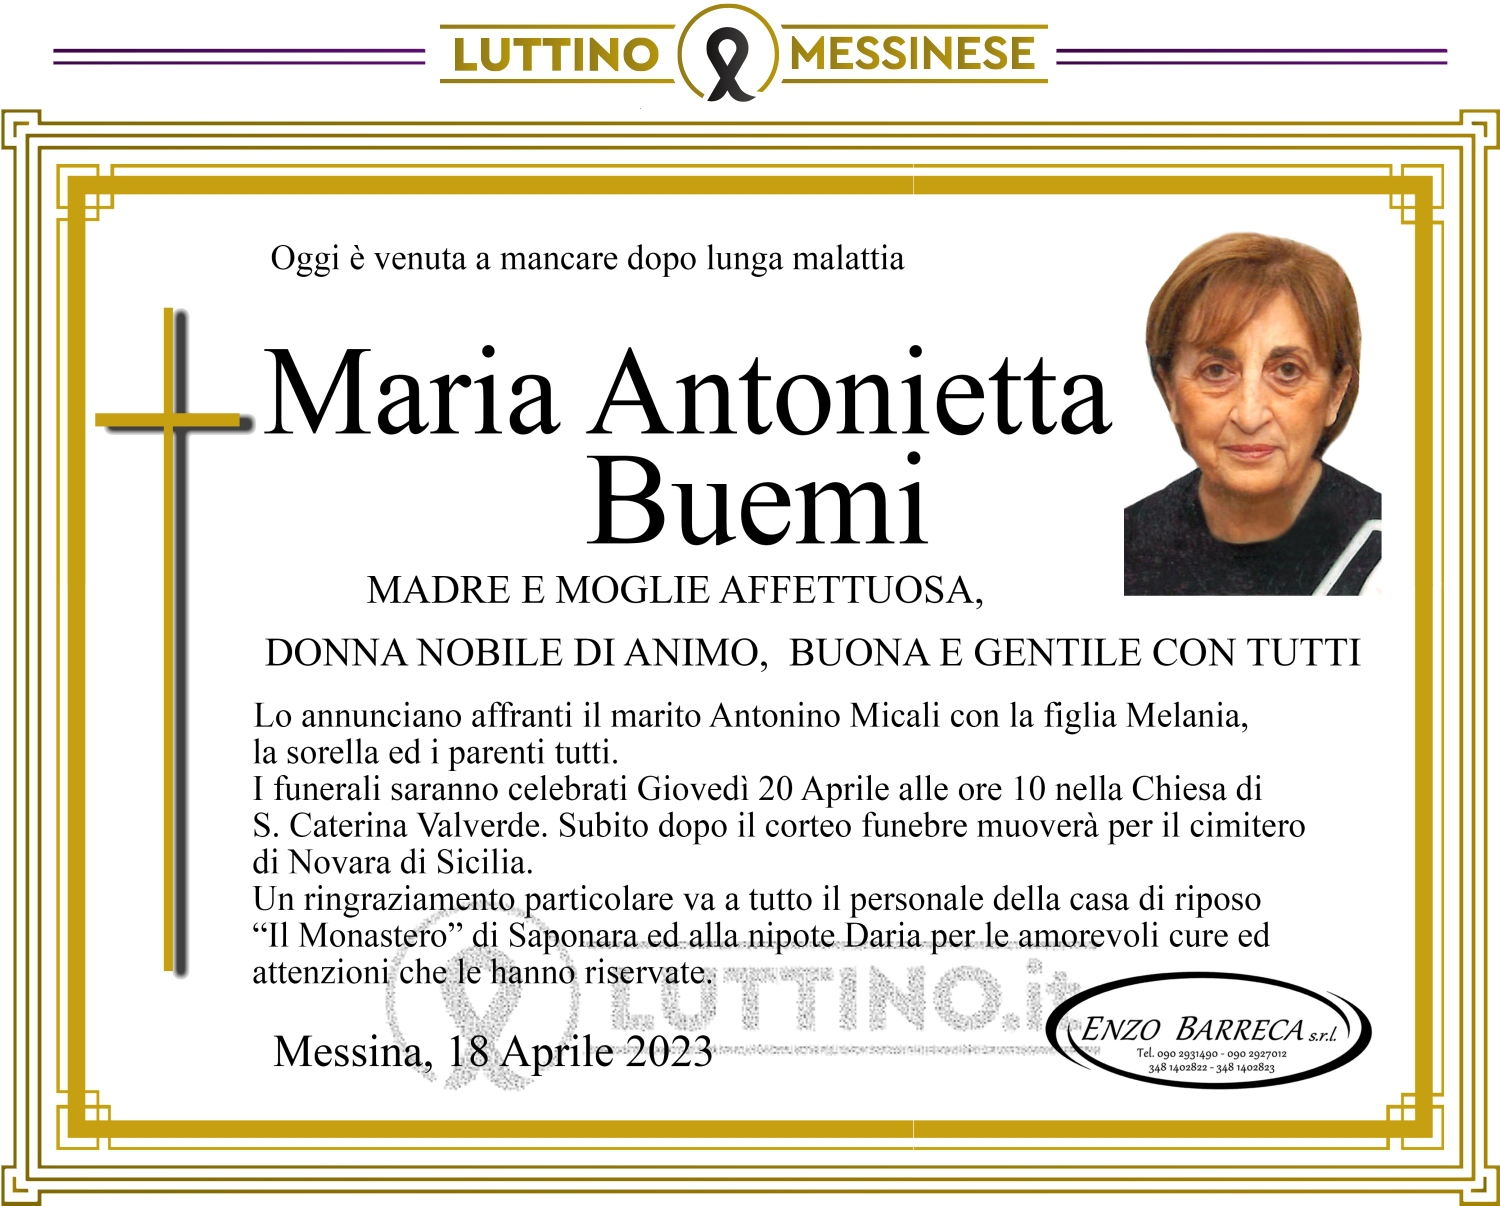 Maria Antonietta Buemi